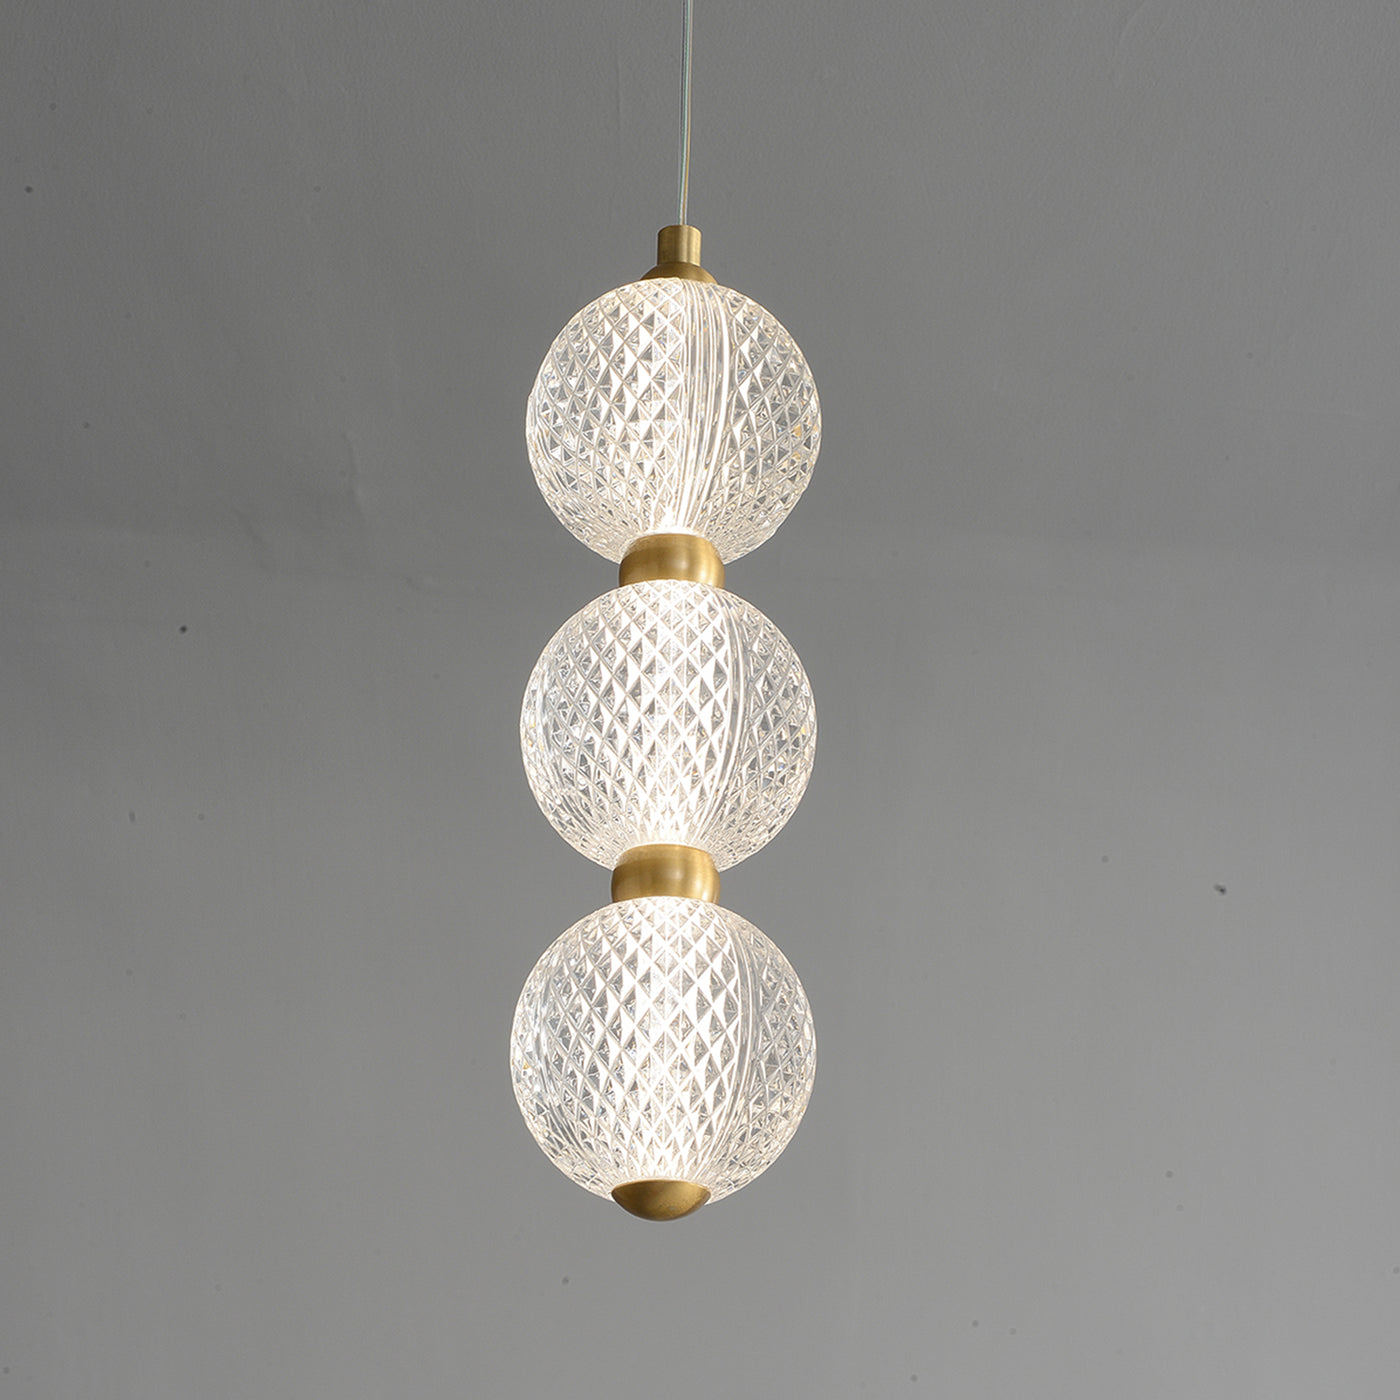 Creative gourd chandelier